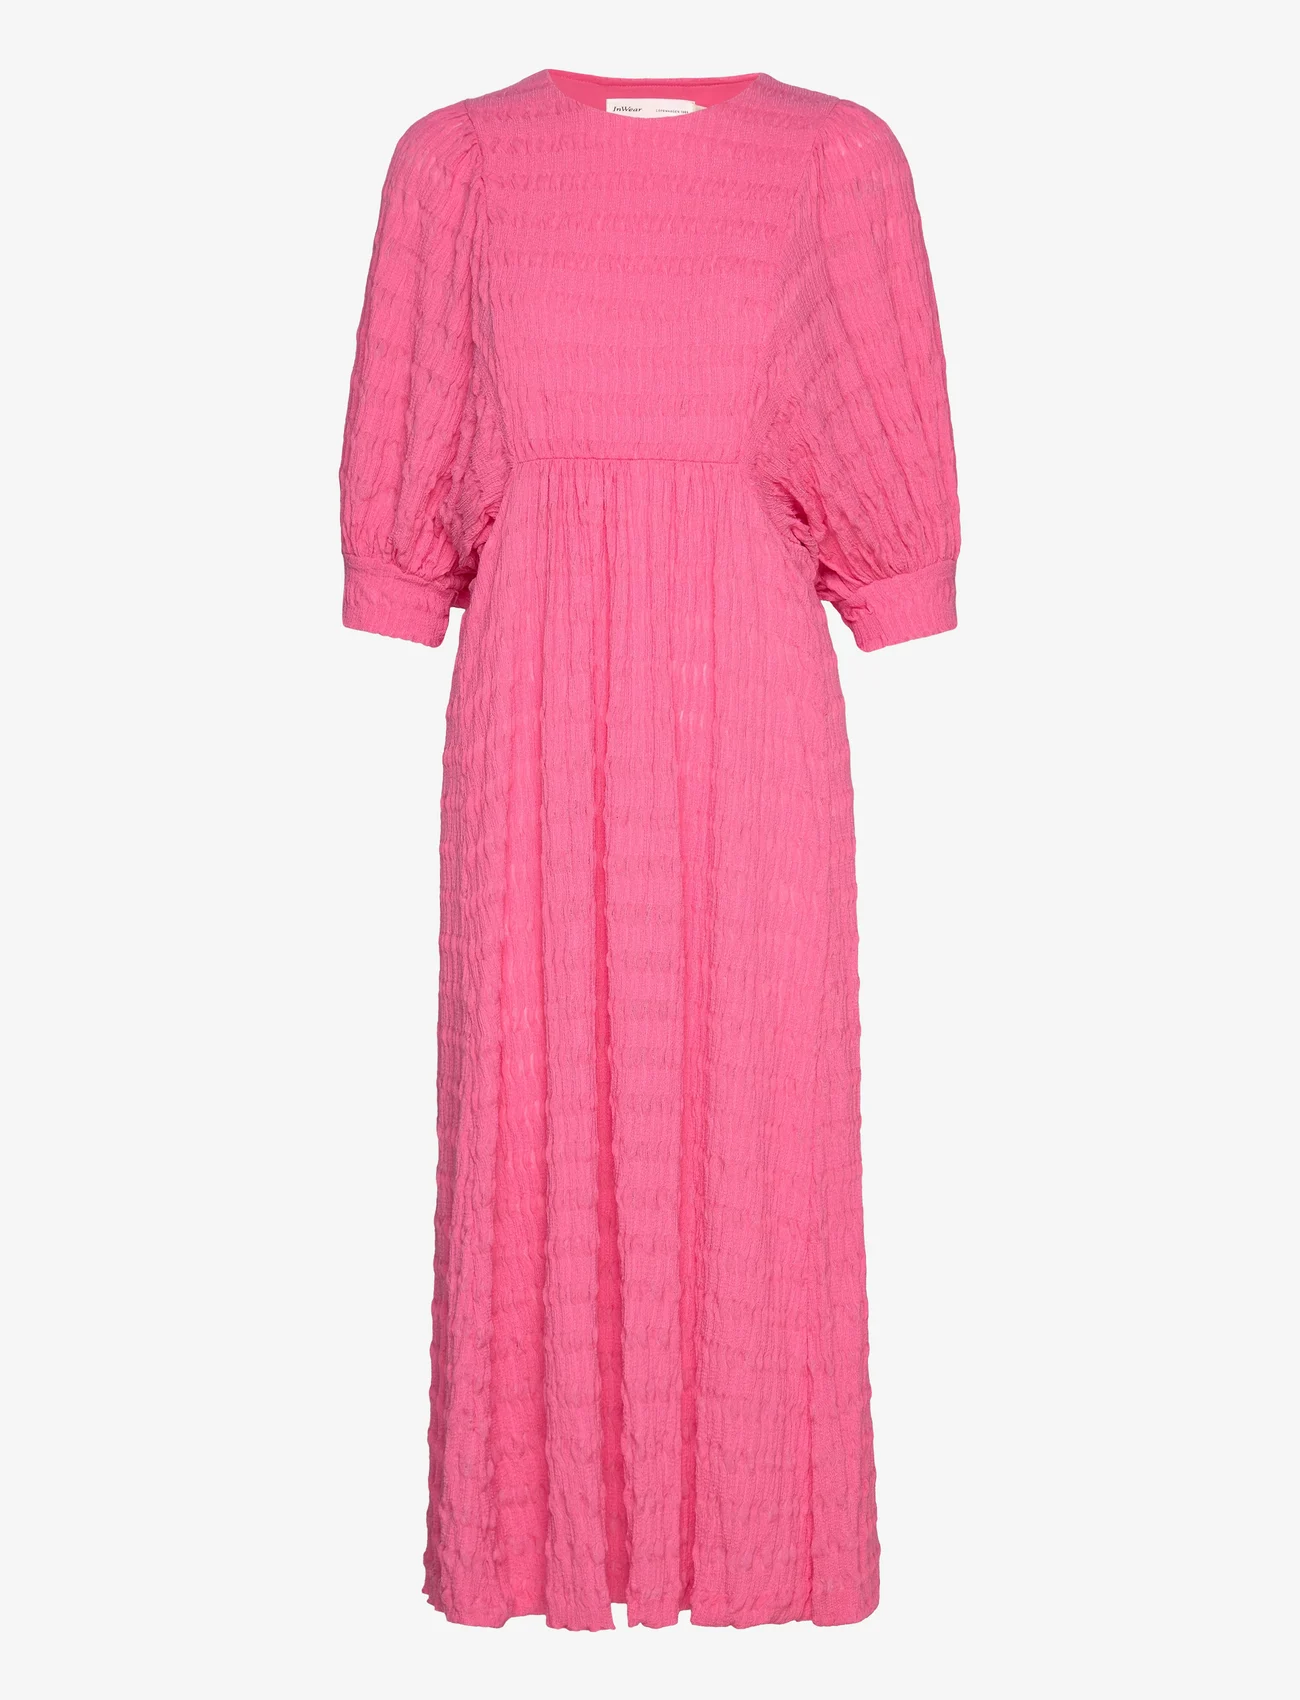 InWear - ZabelleIW Dress - sommerkleider - pink rose - 0